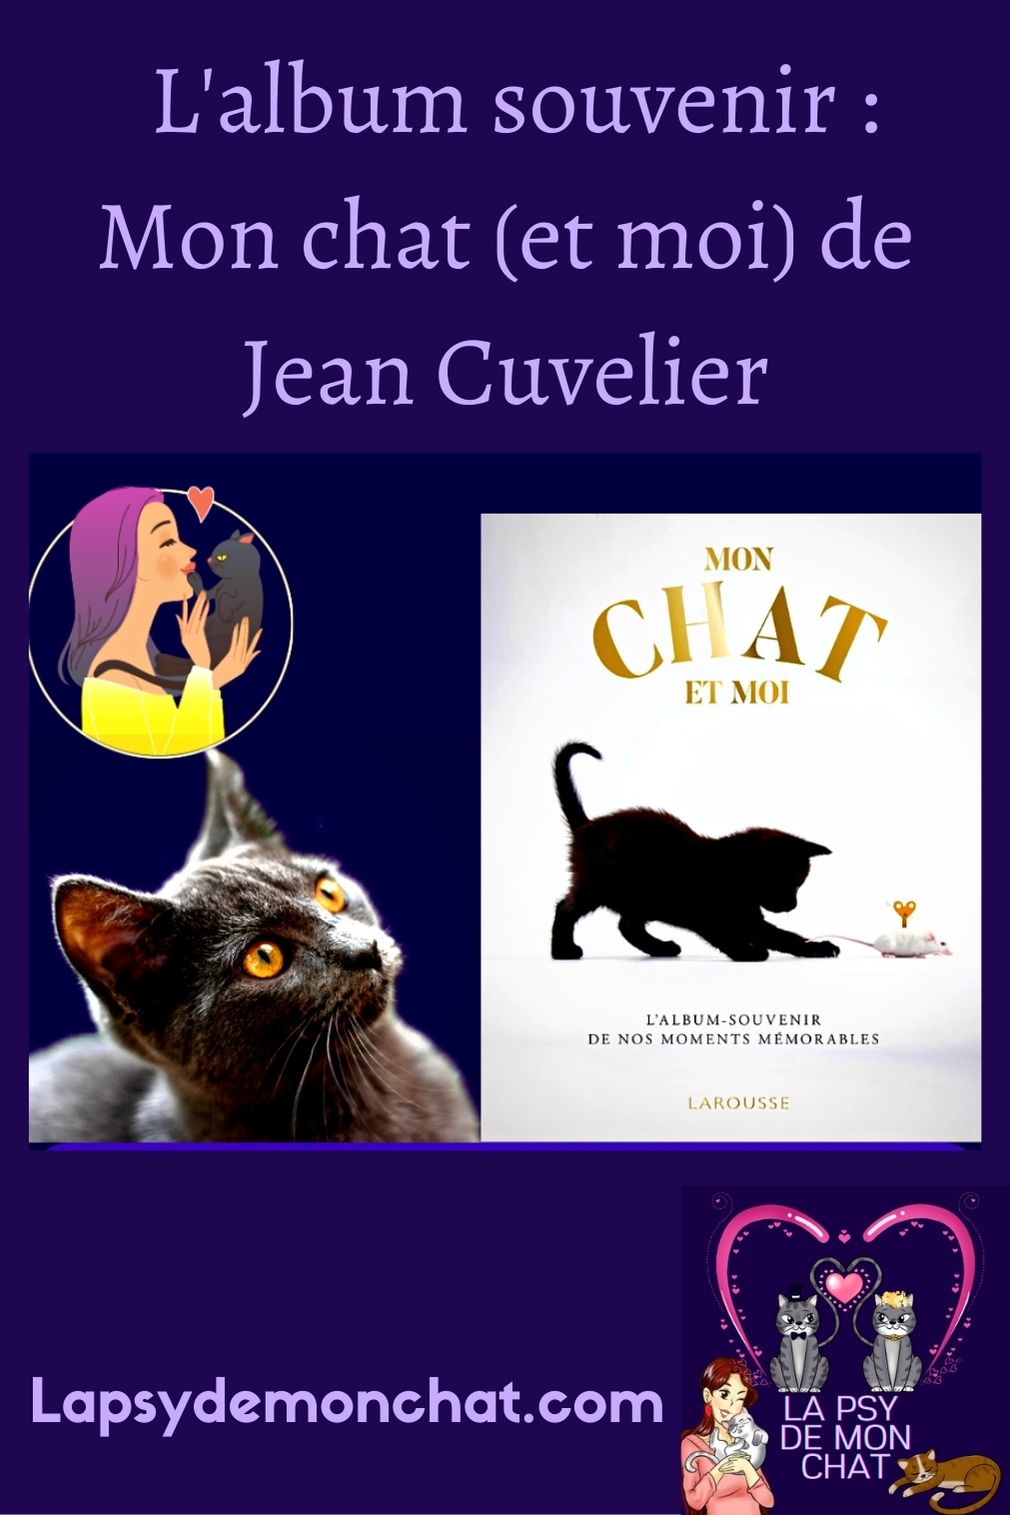 Mon chat (et moi) de Jean Cuvelier - pinterest